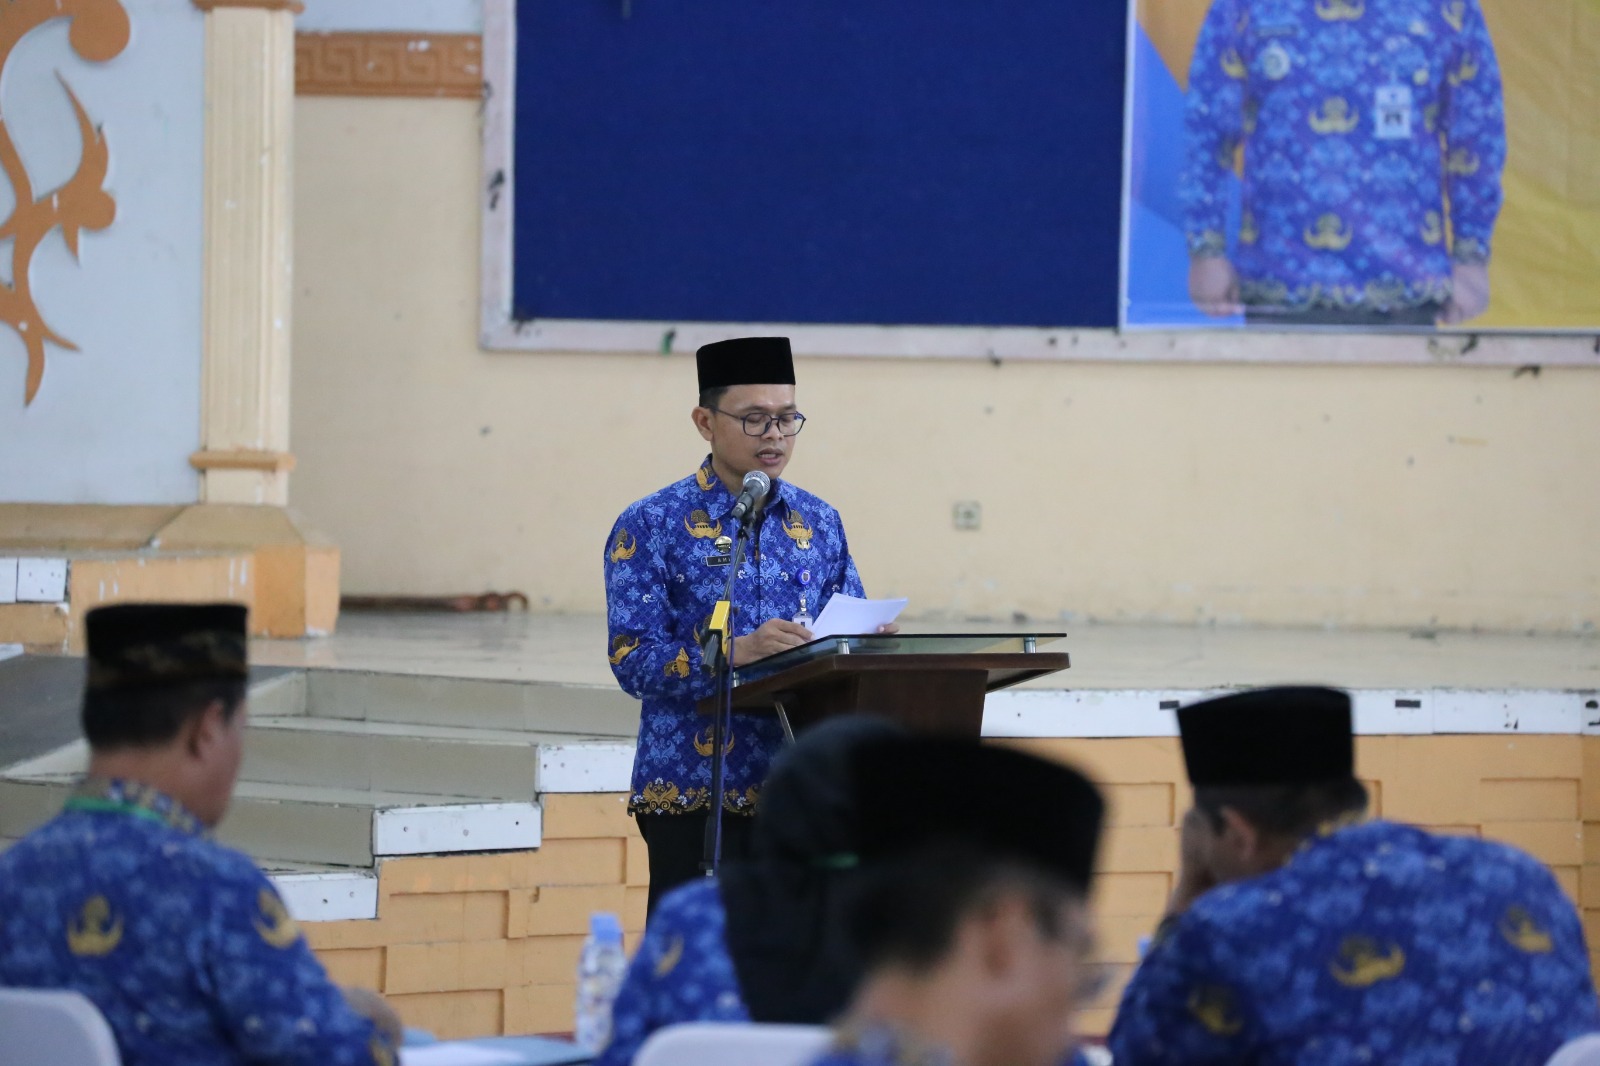 Resmi Menjabat Ketua Korpri Kabupaten Tegal, Sekda Amir Singgung soal Digital Society 4.0  